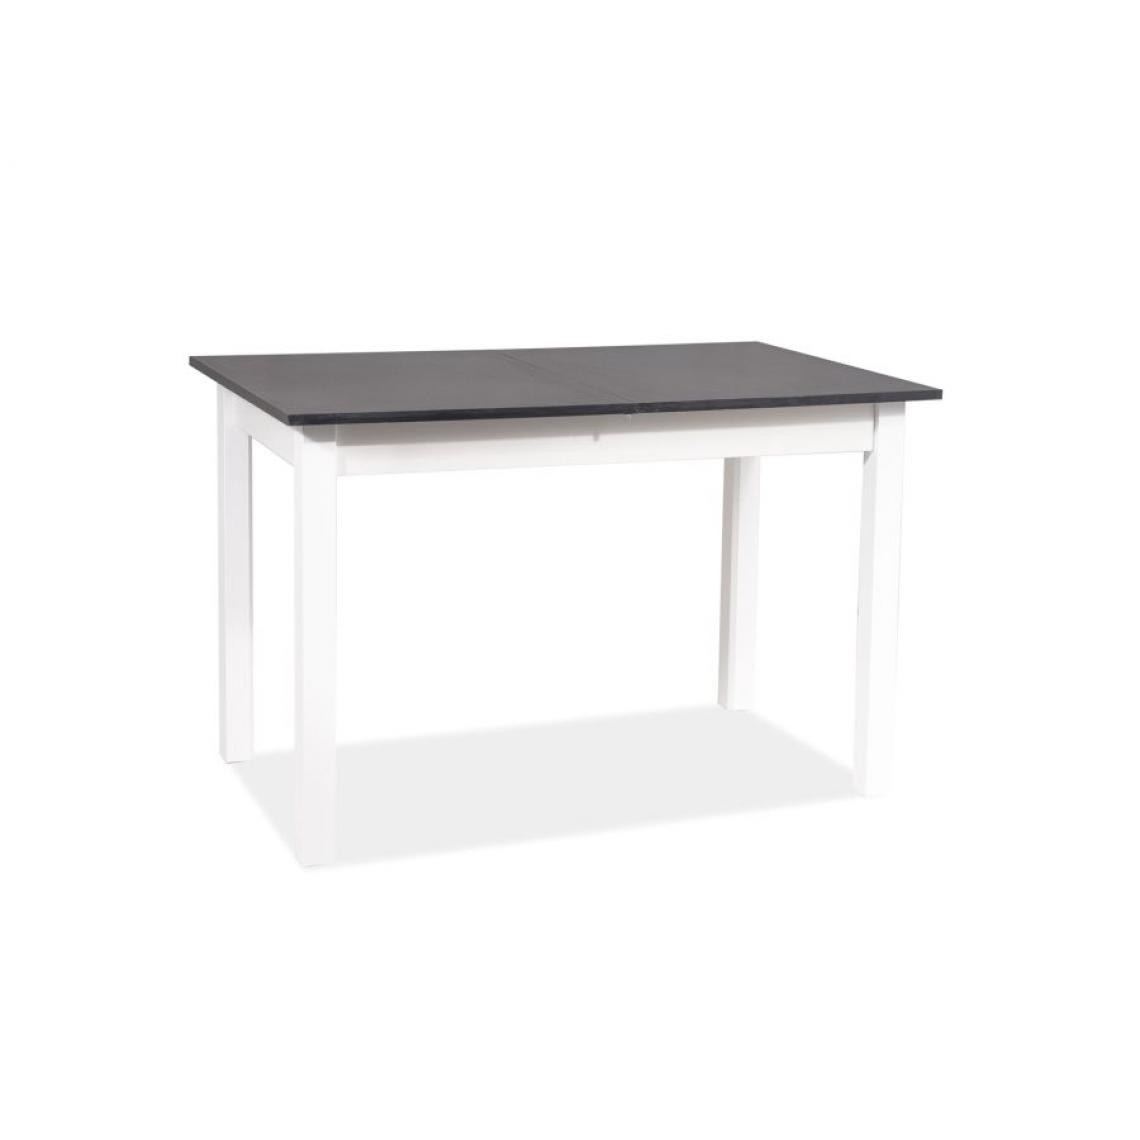 Hucoco - HOSACY - Table extensible moderne pour le salon - 125x75x75 cm - Plateau en panneau MDF - Piètement en bois MDF - Gris - Tables à manger